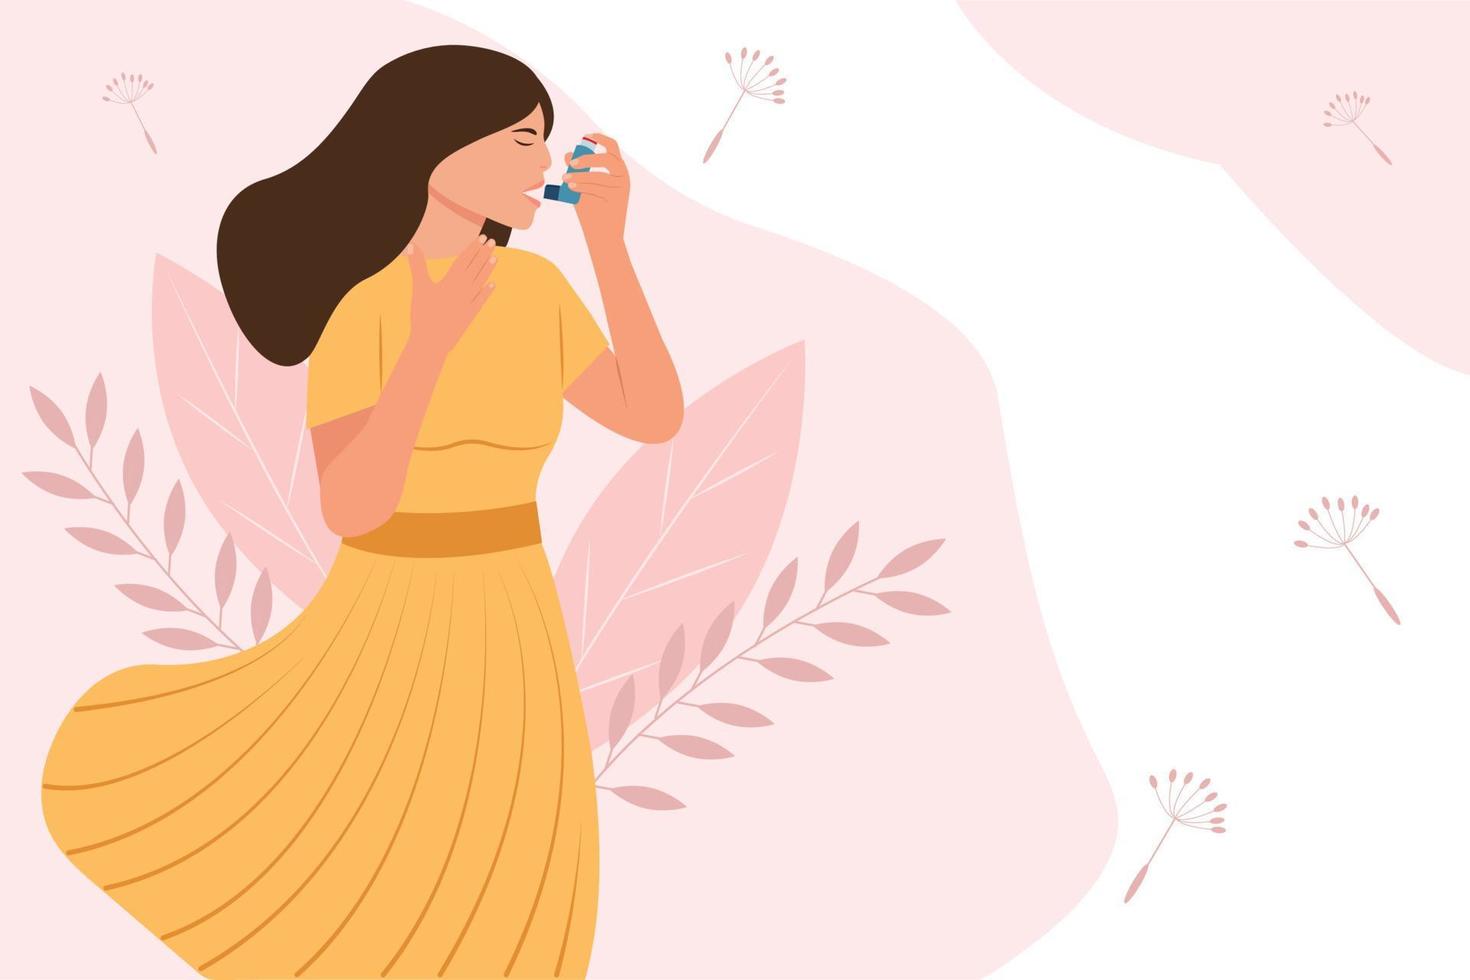 dia mundial da asma..mulher usa um inalador de asma contra ataque. alergia, asma brônquica. ilustração vetorial vetor